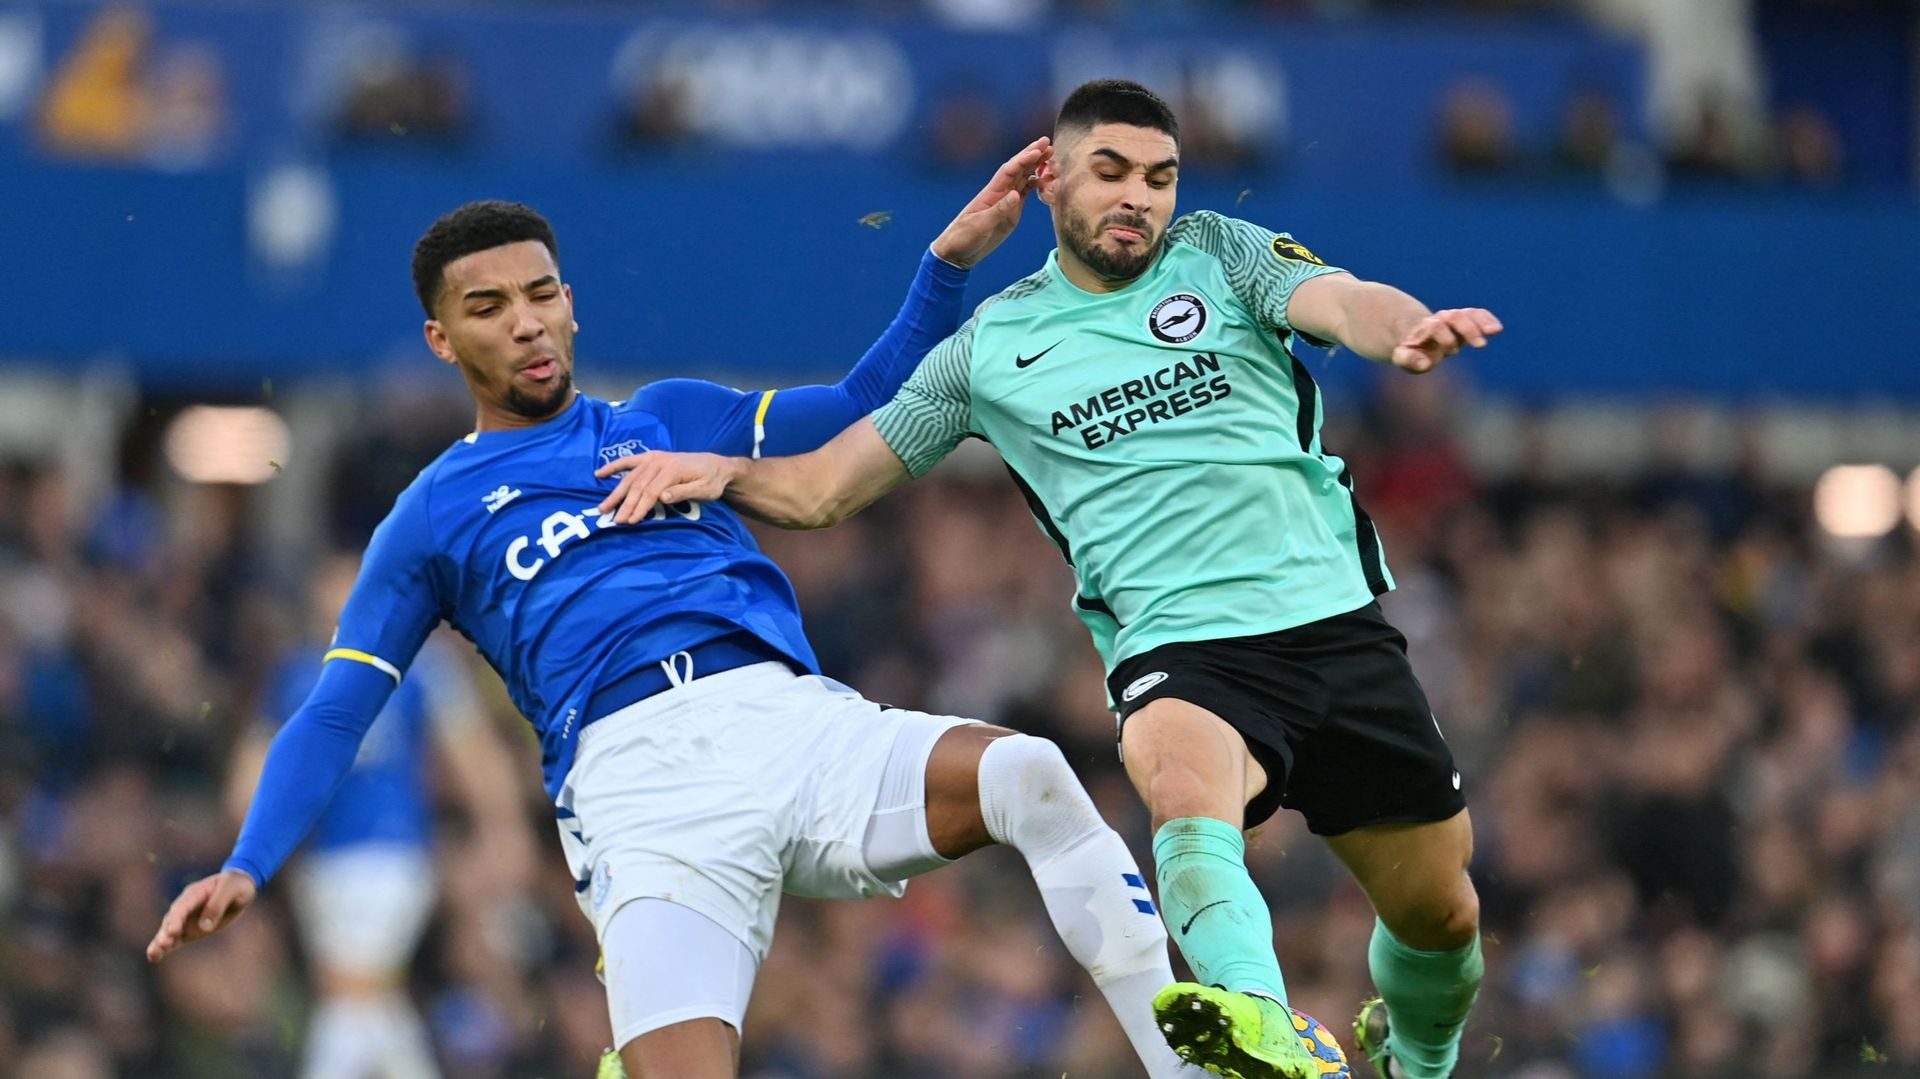 Brighton et Léandro Trossard se sont imposés 2-3 sur la pelouse d’Everton dimanche après-midi pour le compte de la 21e journée de Premier League.